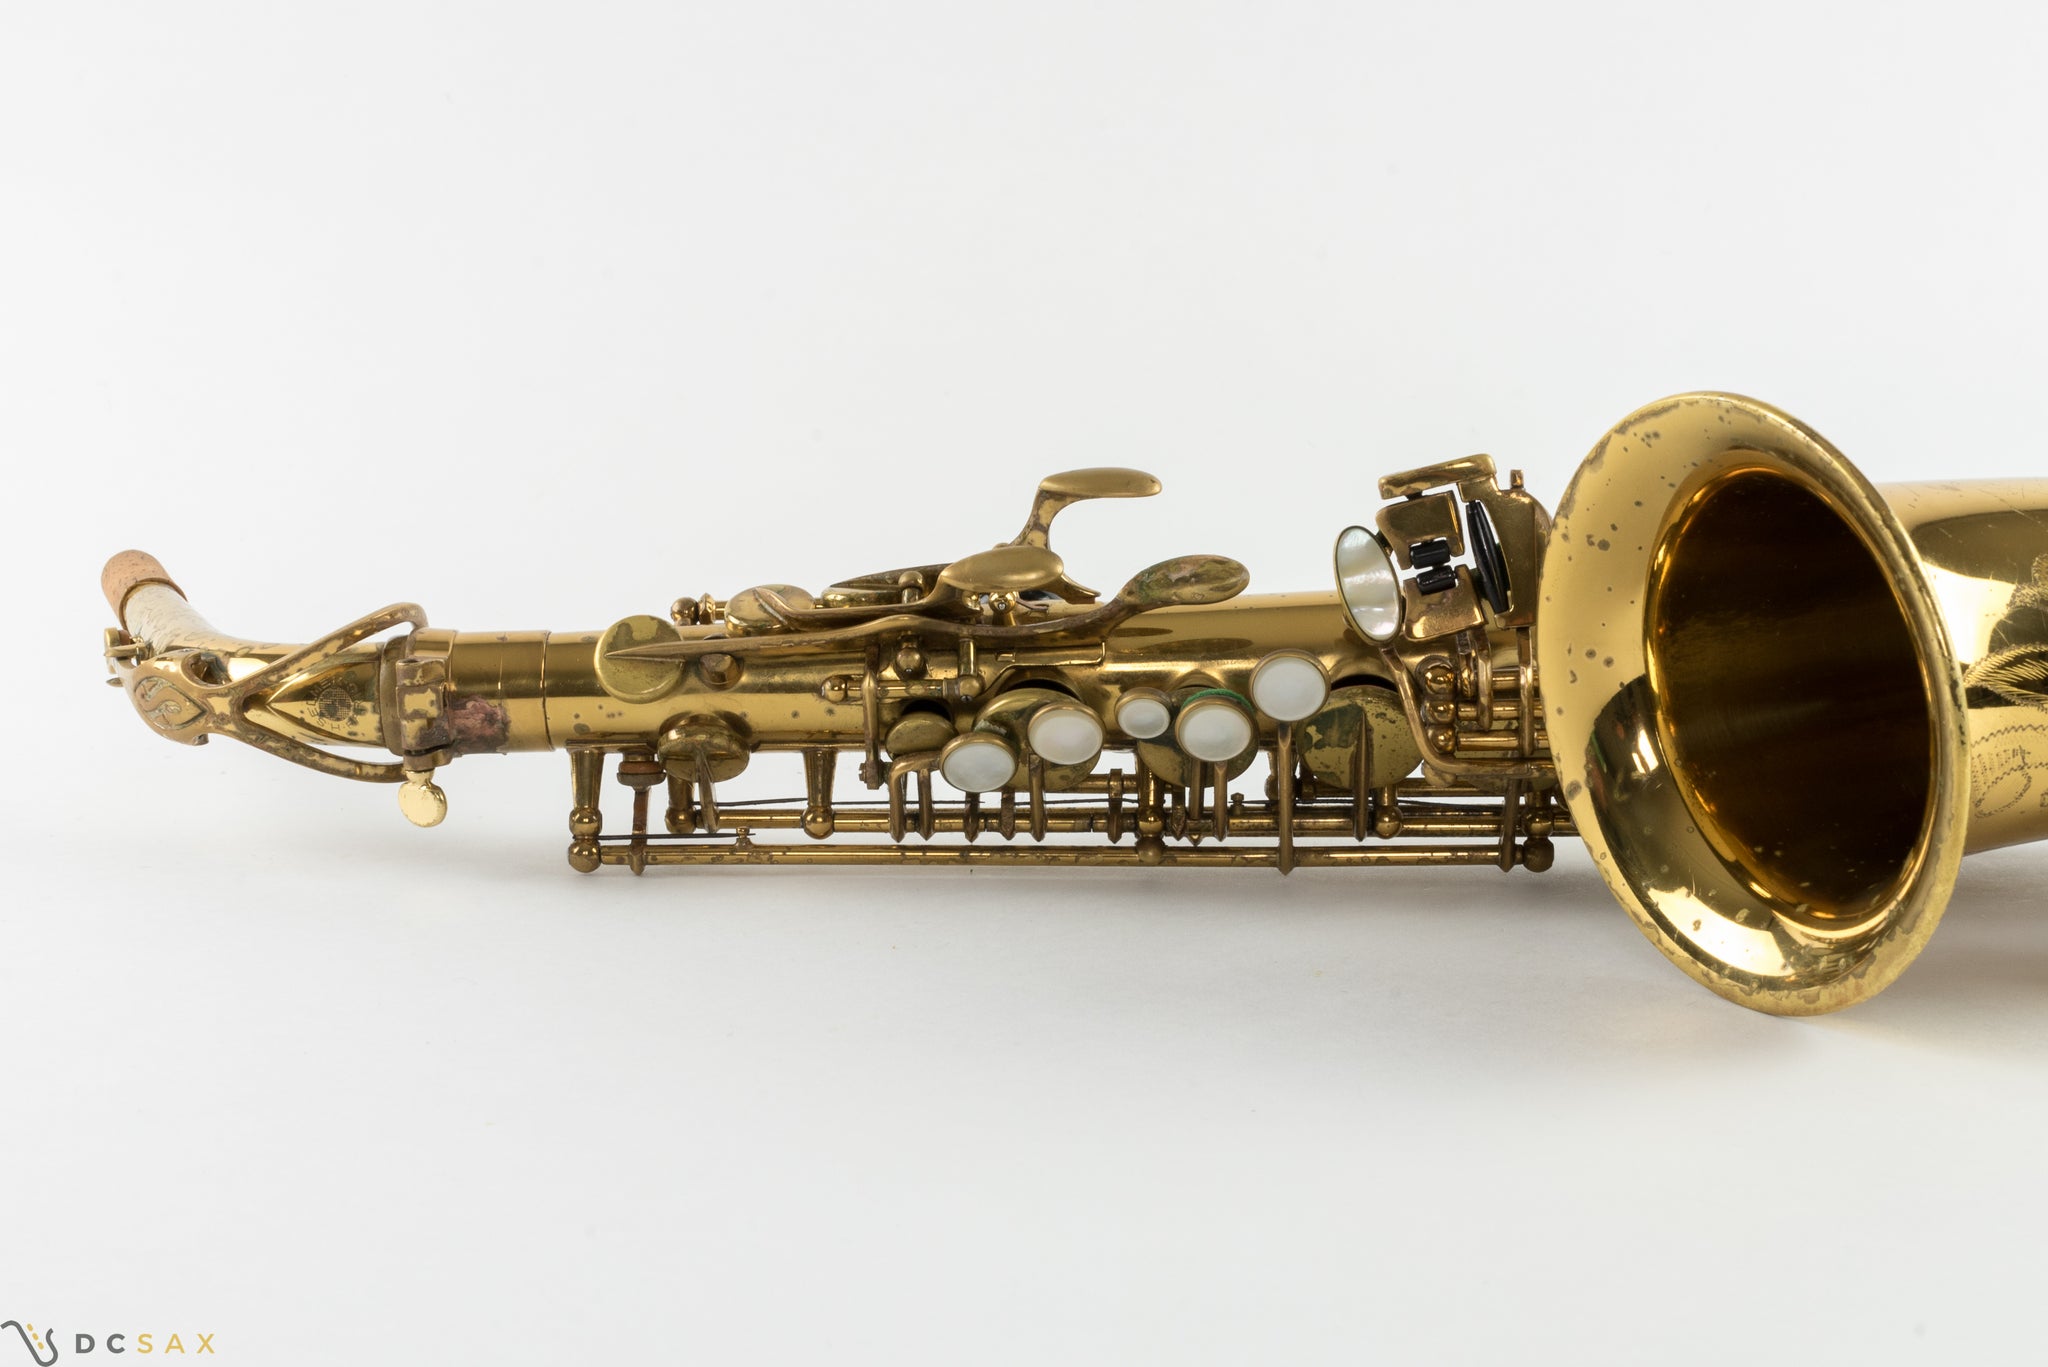 Selmer Mark VI Alto Saxophone, 95% Original Lacquer, Video